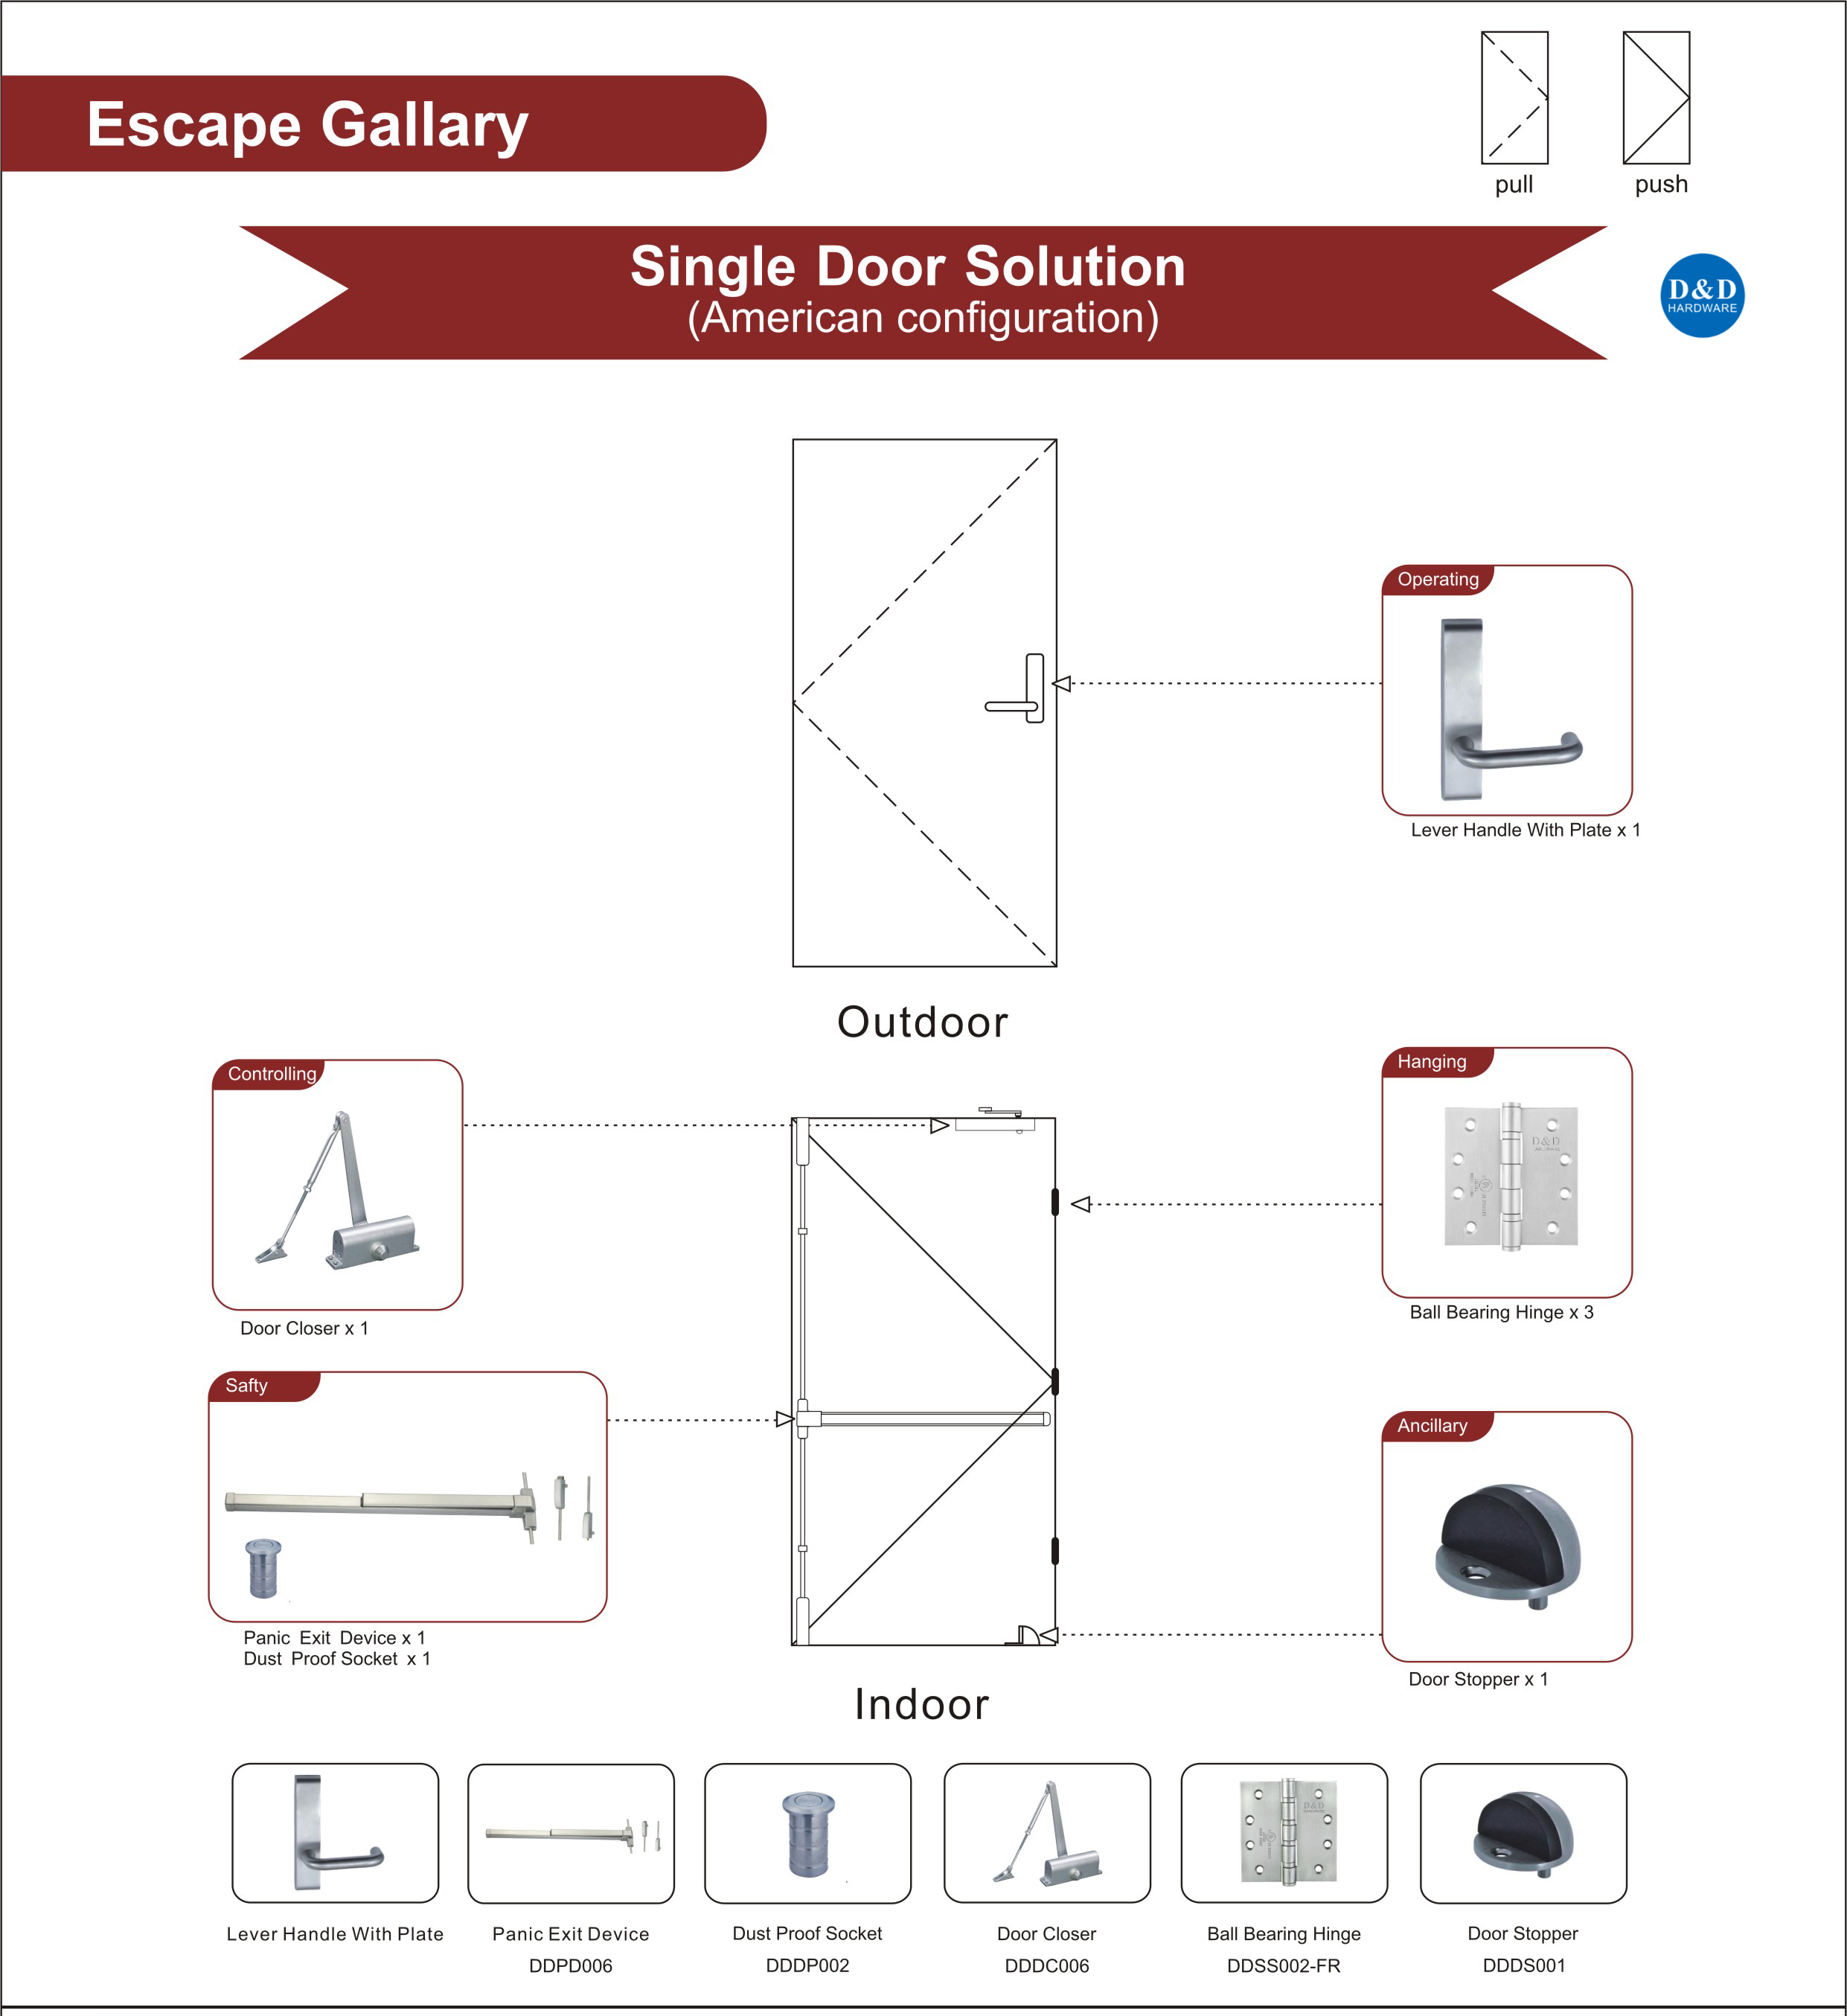 Fire Rated Steel Door Hardware for Escape Gallery Single Door